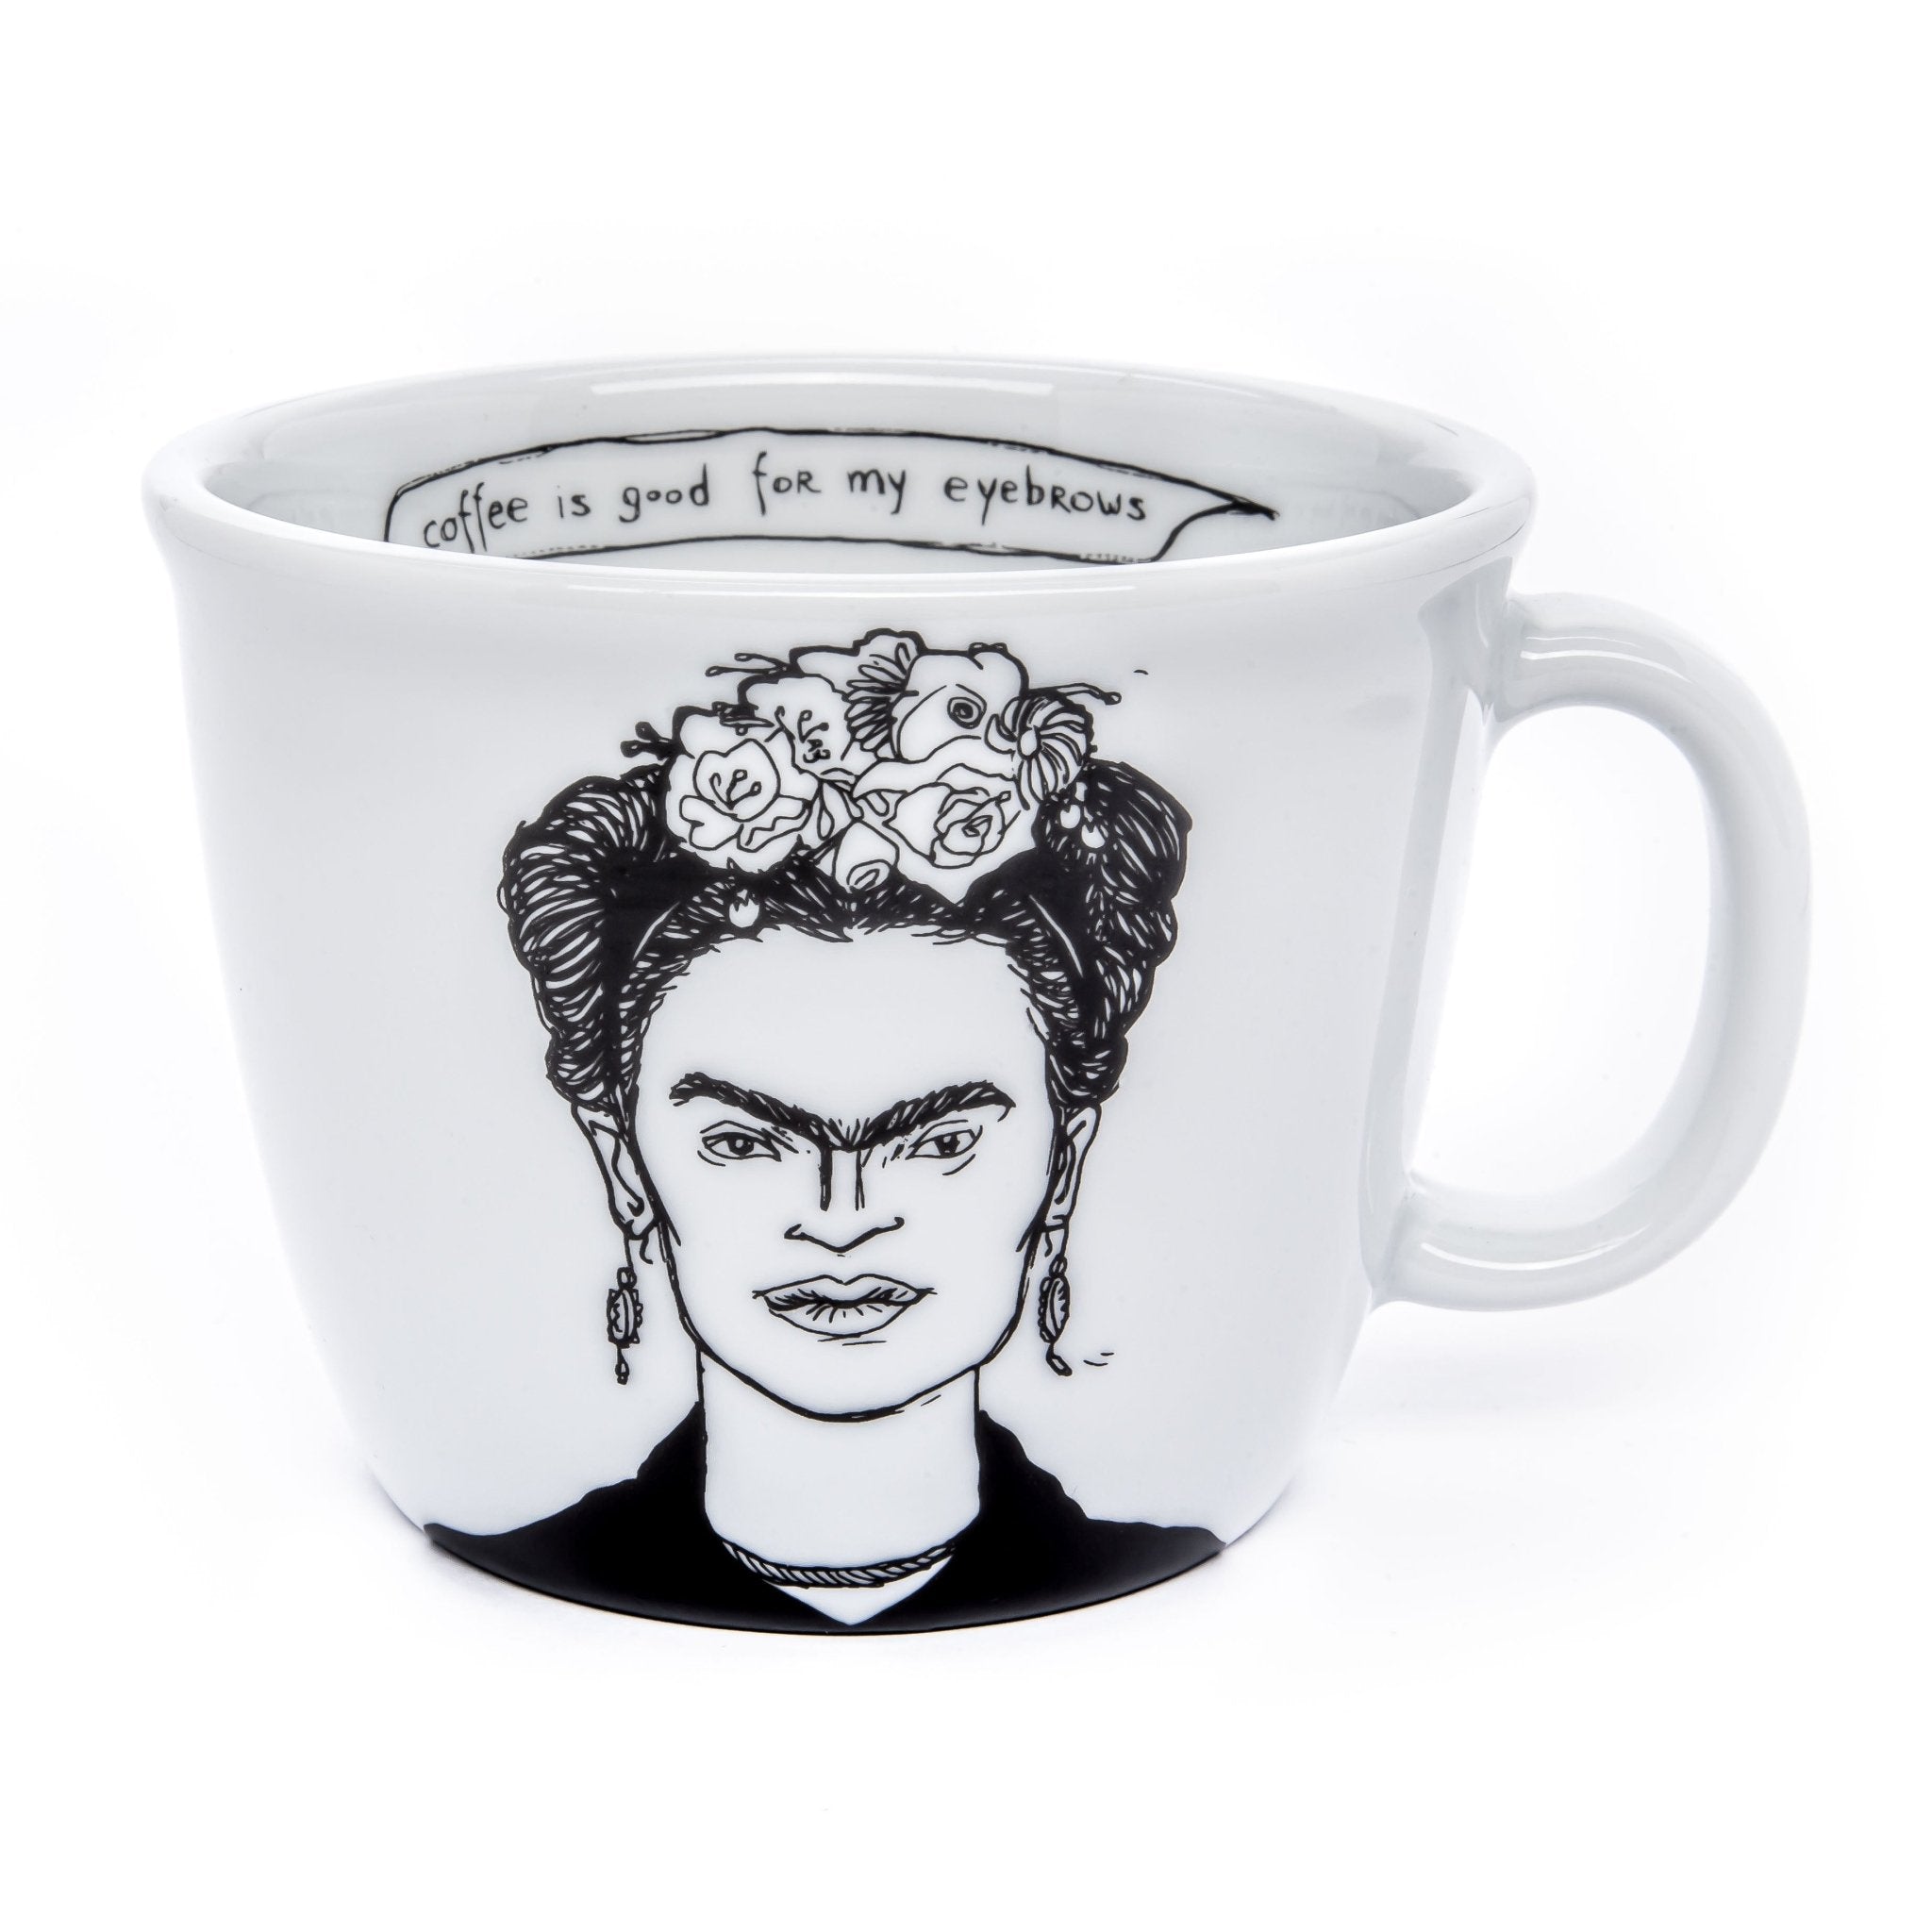 Porcelain cup inspired by Frida Kahlo